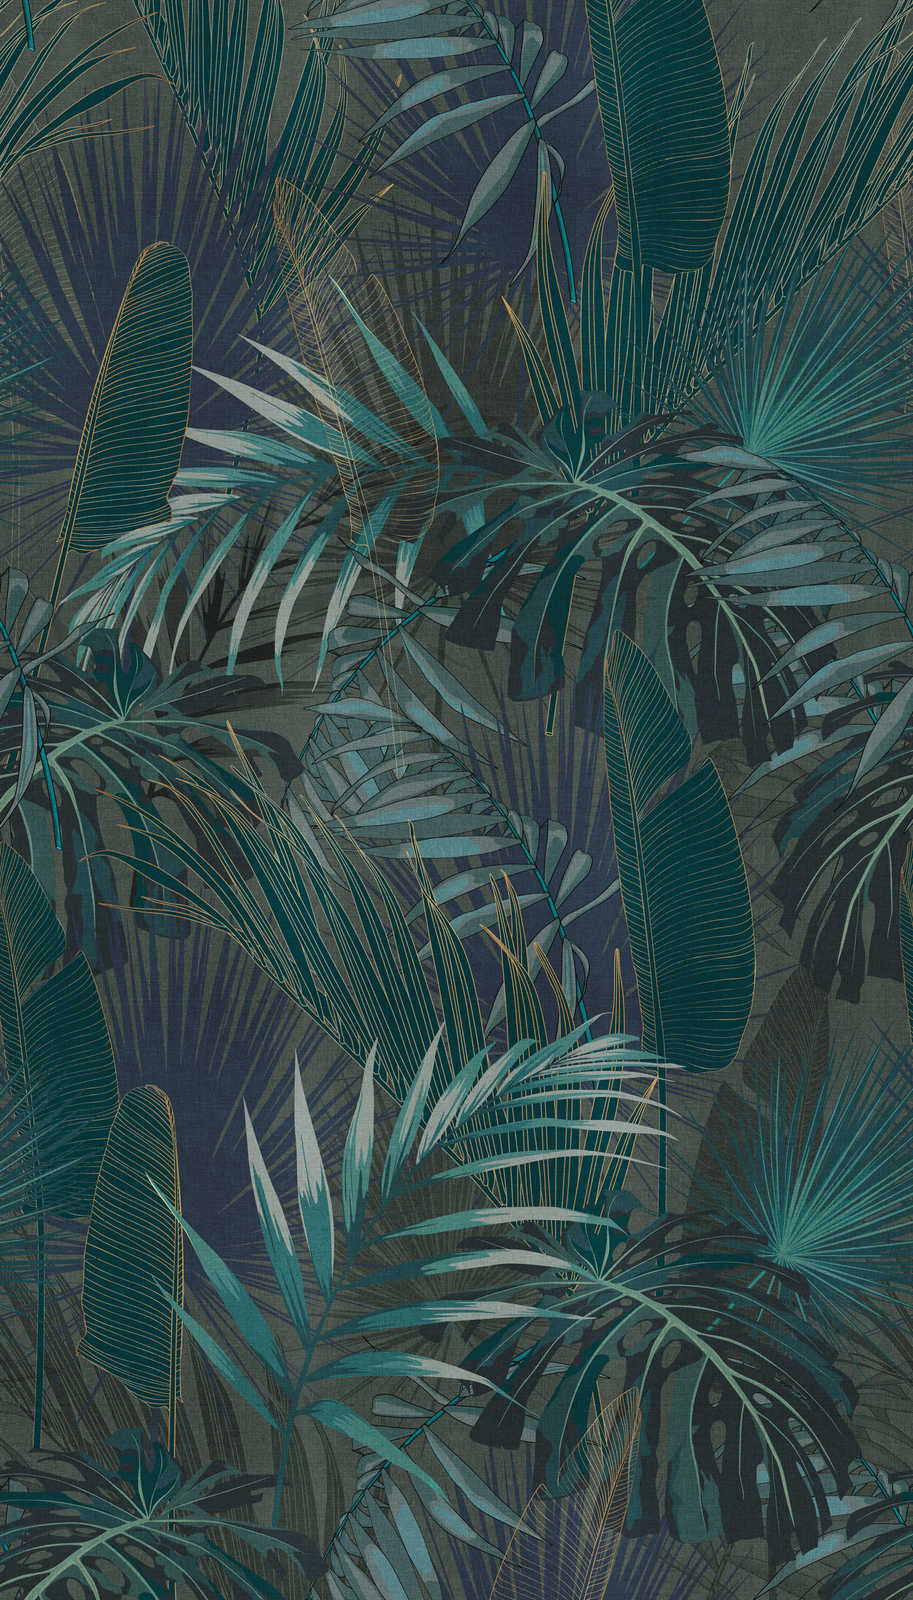             Onderlaag behang met jungle bladeren motief - petrol, blauw, groen
        